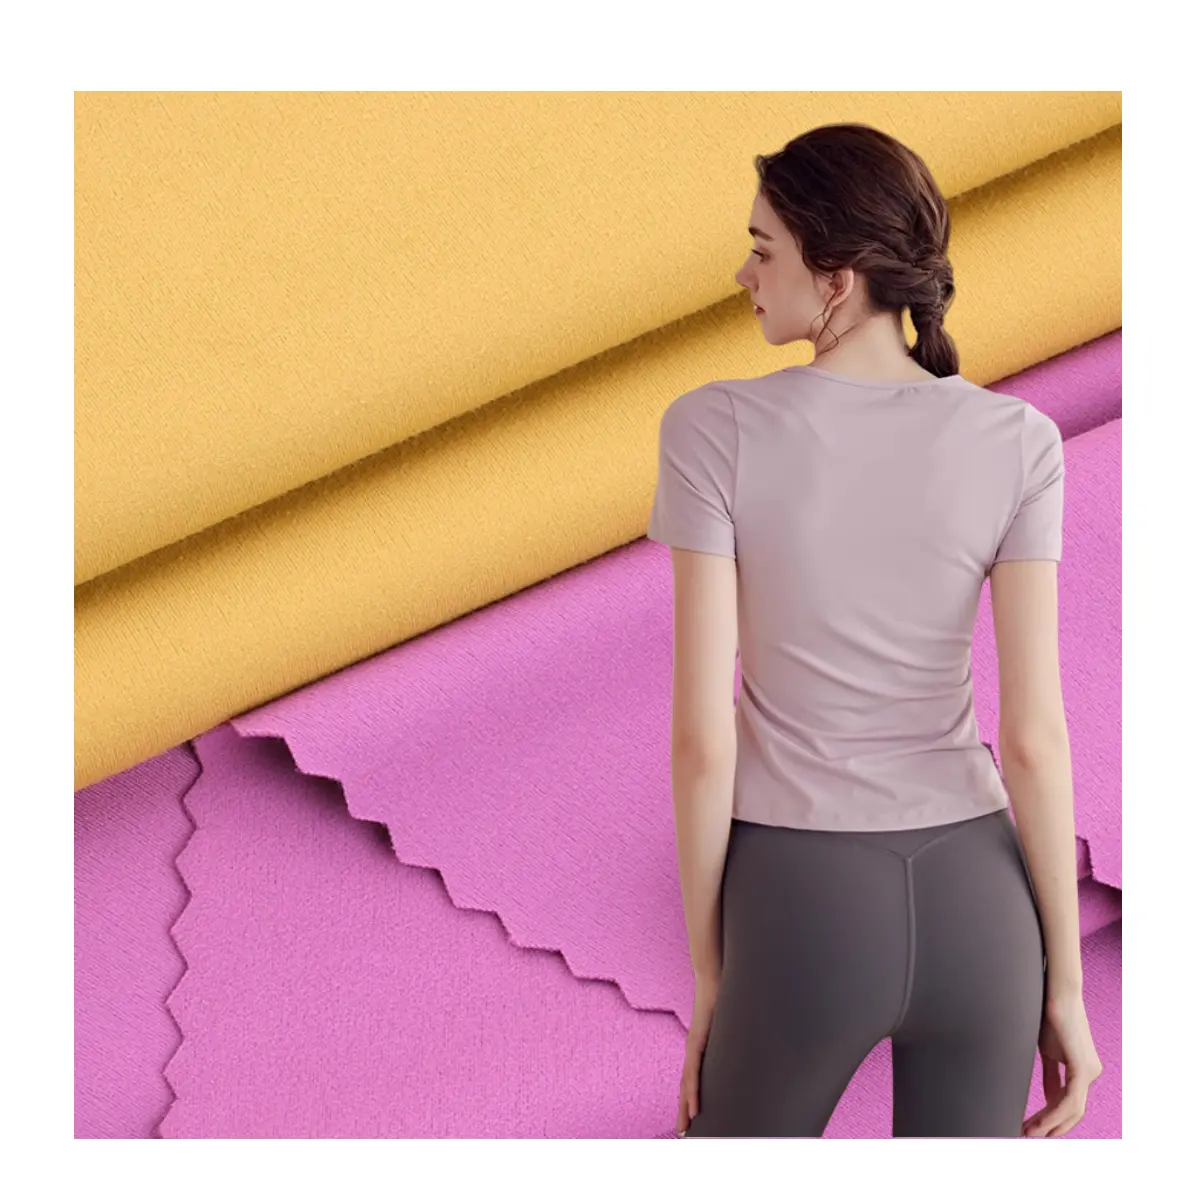 Lulu warna solid rajut 4 cara peregangan 75 nilon 25 jersey kain spandeks pakaian renang celana yoga celana olahraga legging